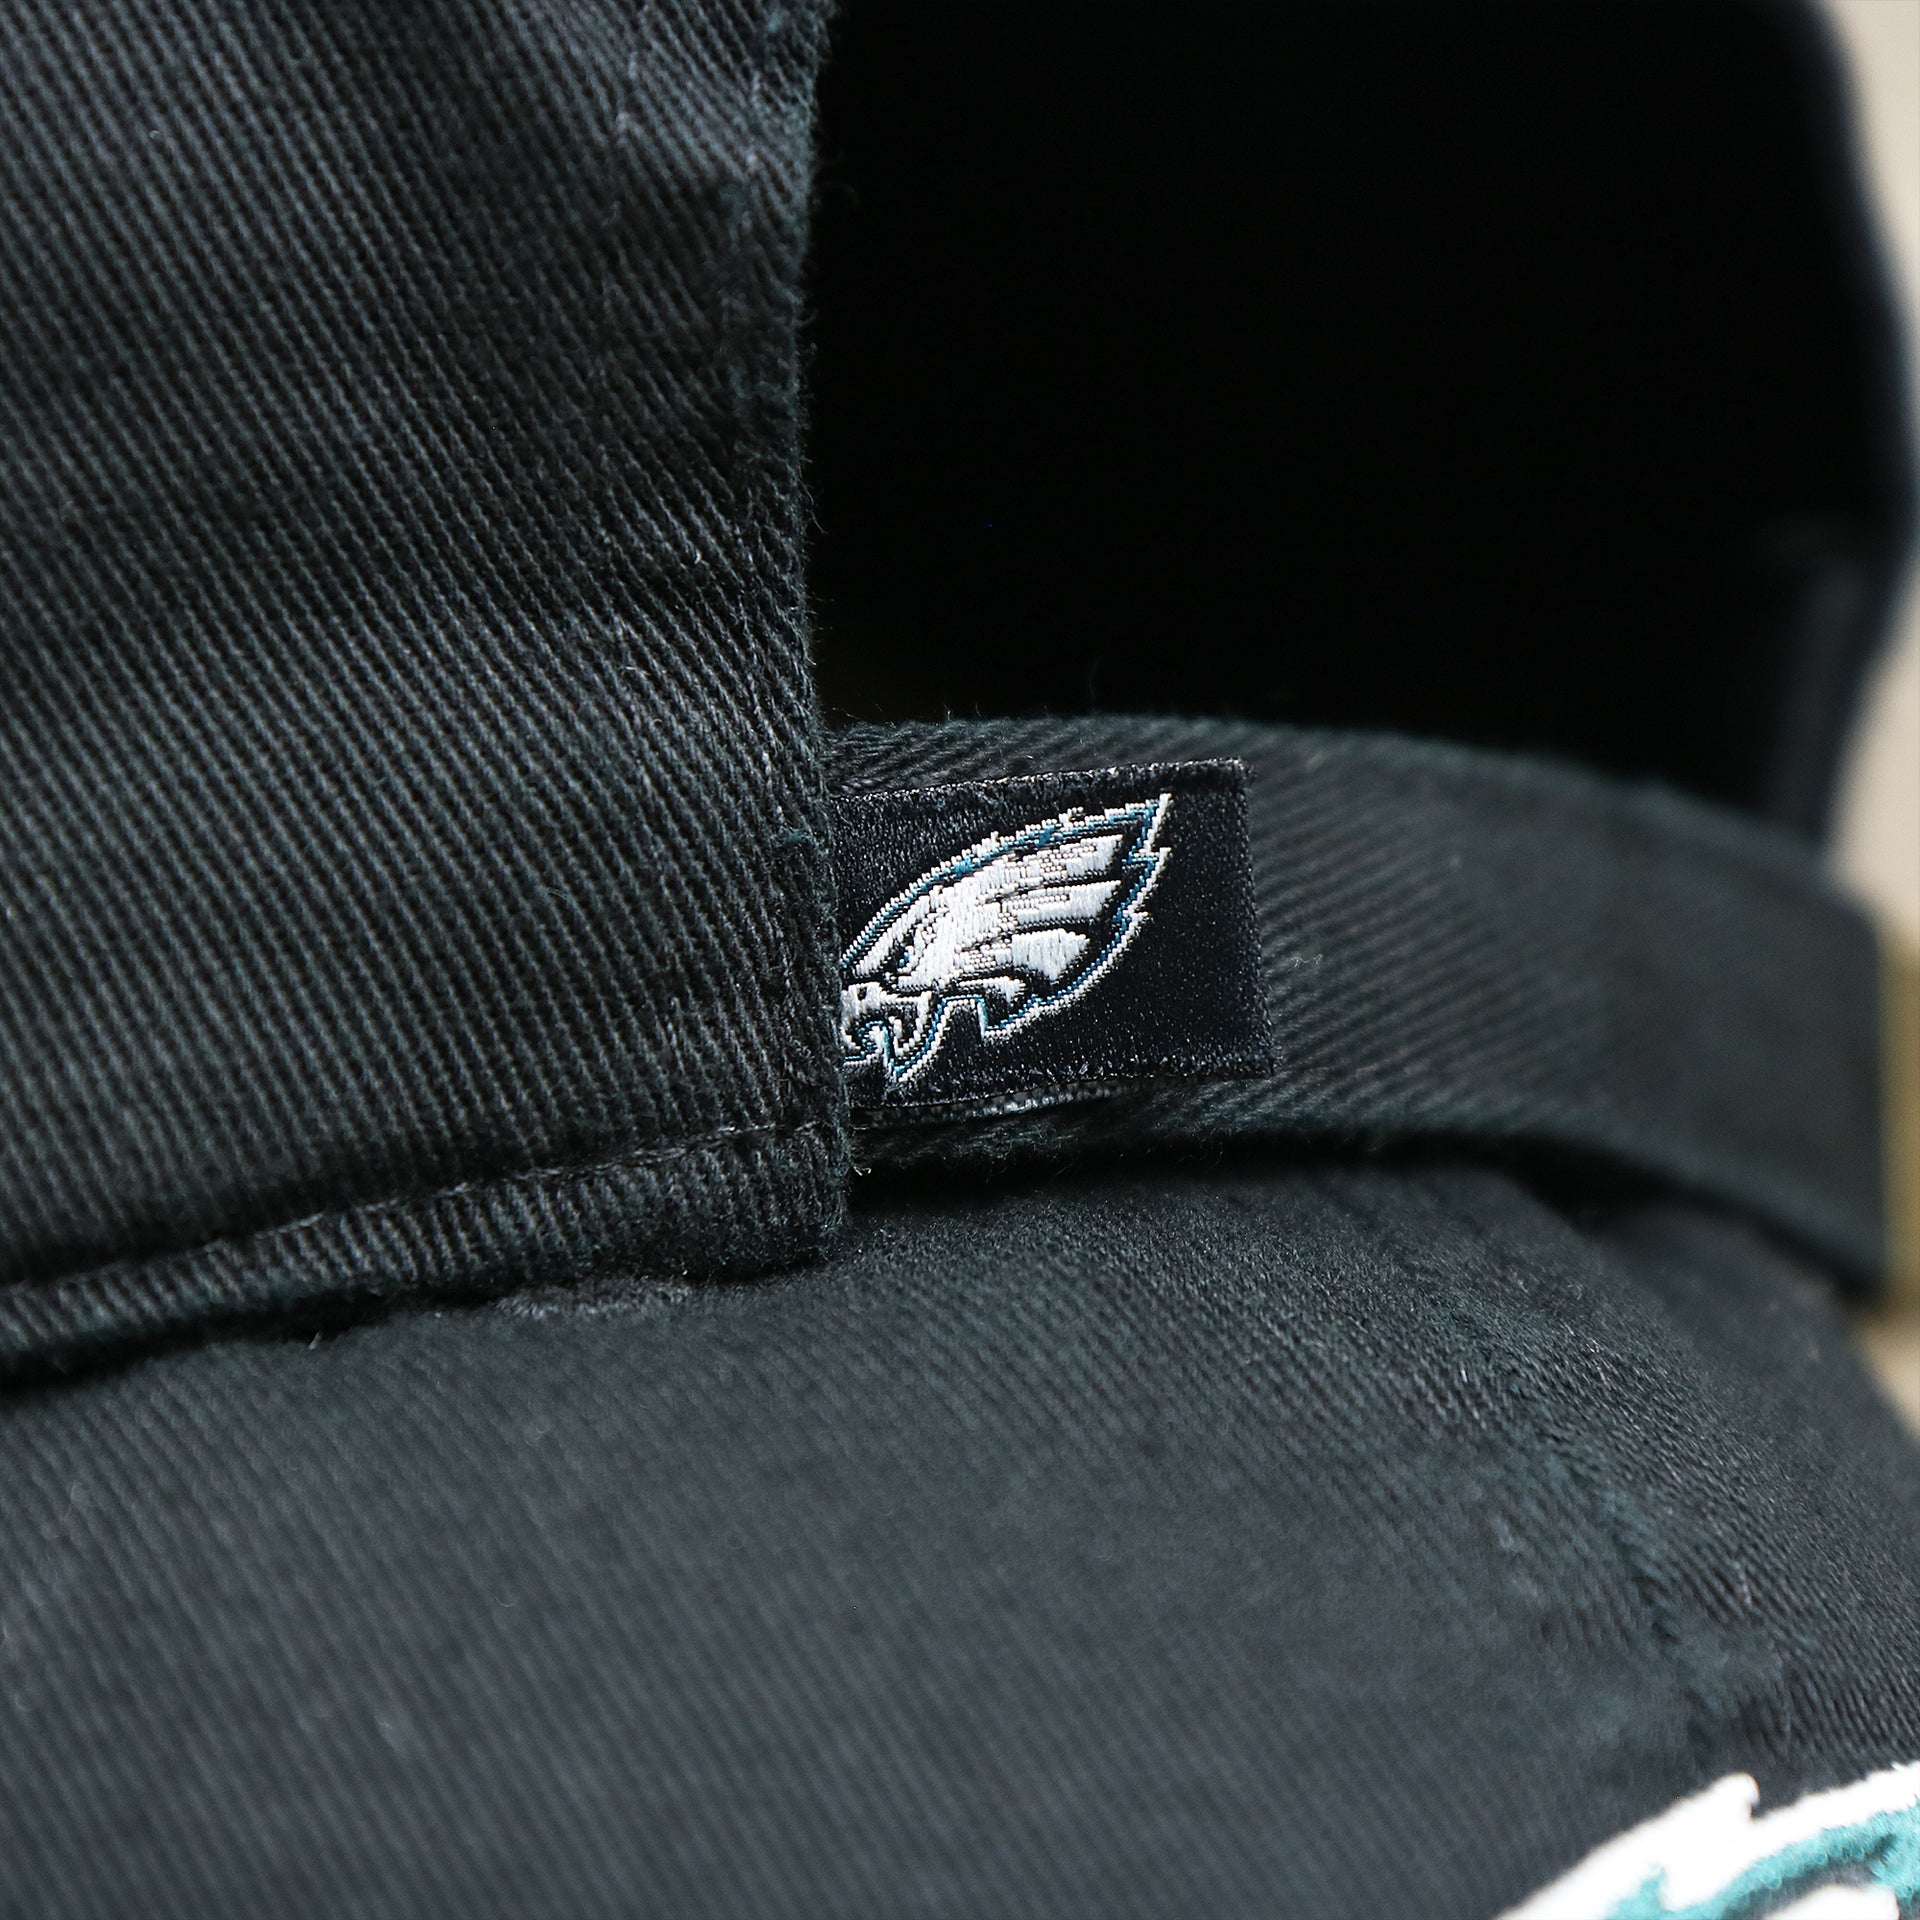 The Eagles Tag on the Philadelphia Eagles Logo Adjustable Dad Hat | Black Dad Hat